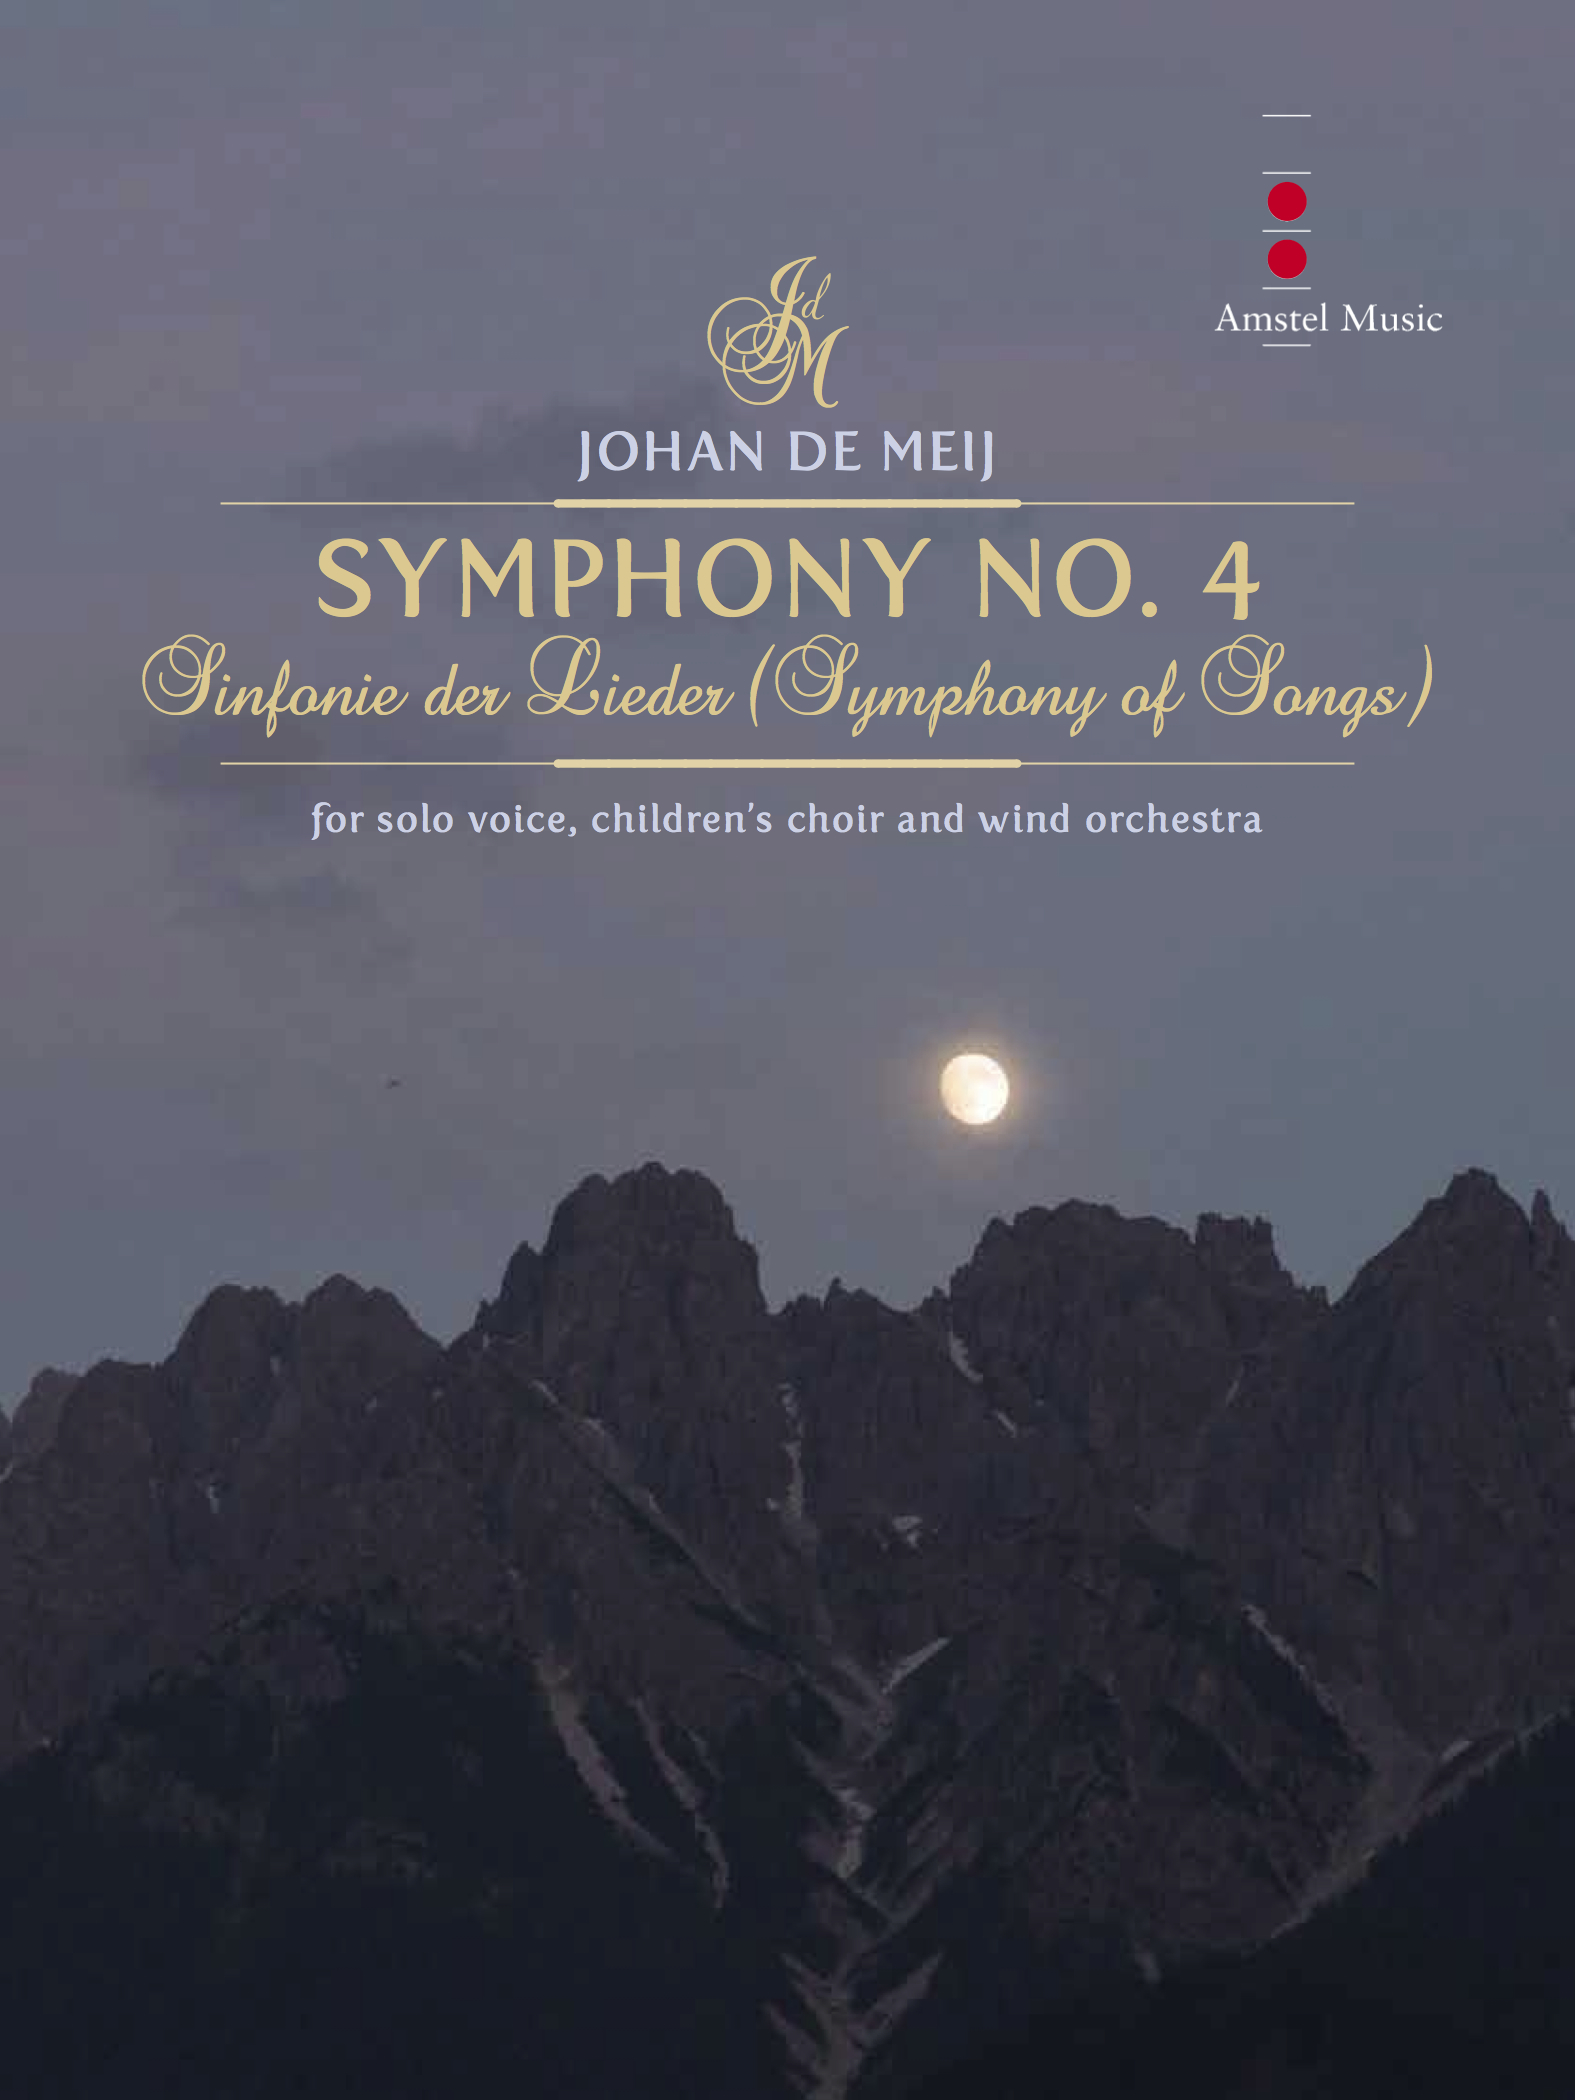 Blasorchesternoten Symphony No. 4 - Symphony of Songs Cover